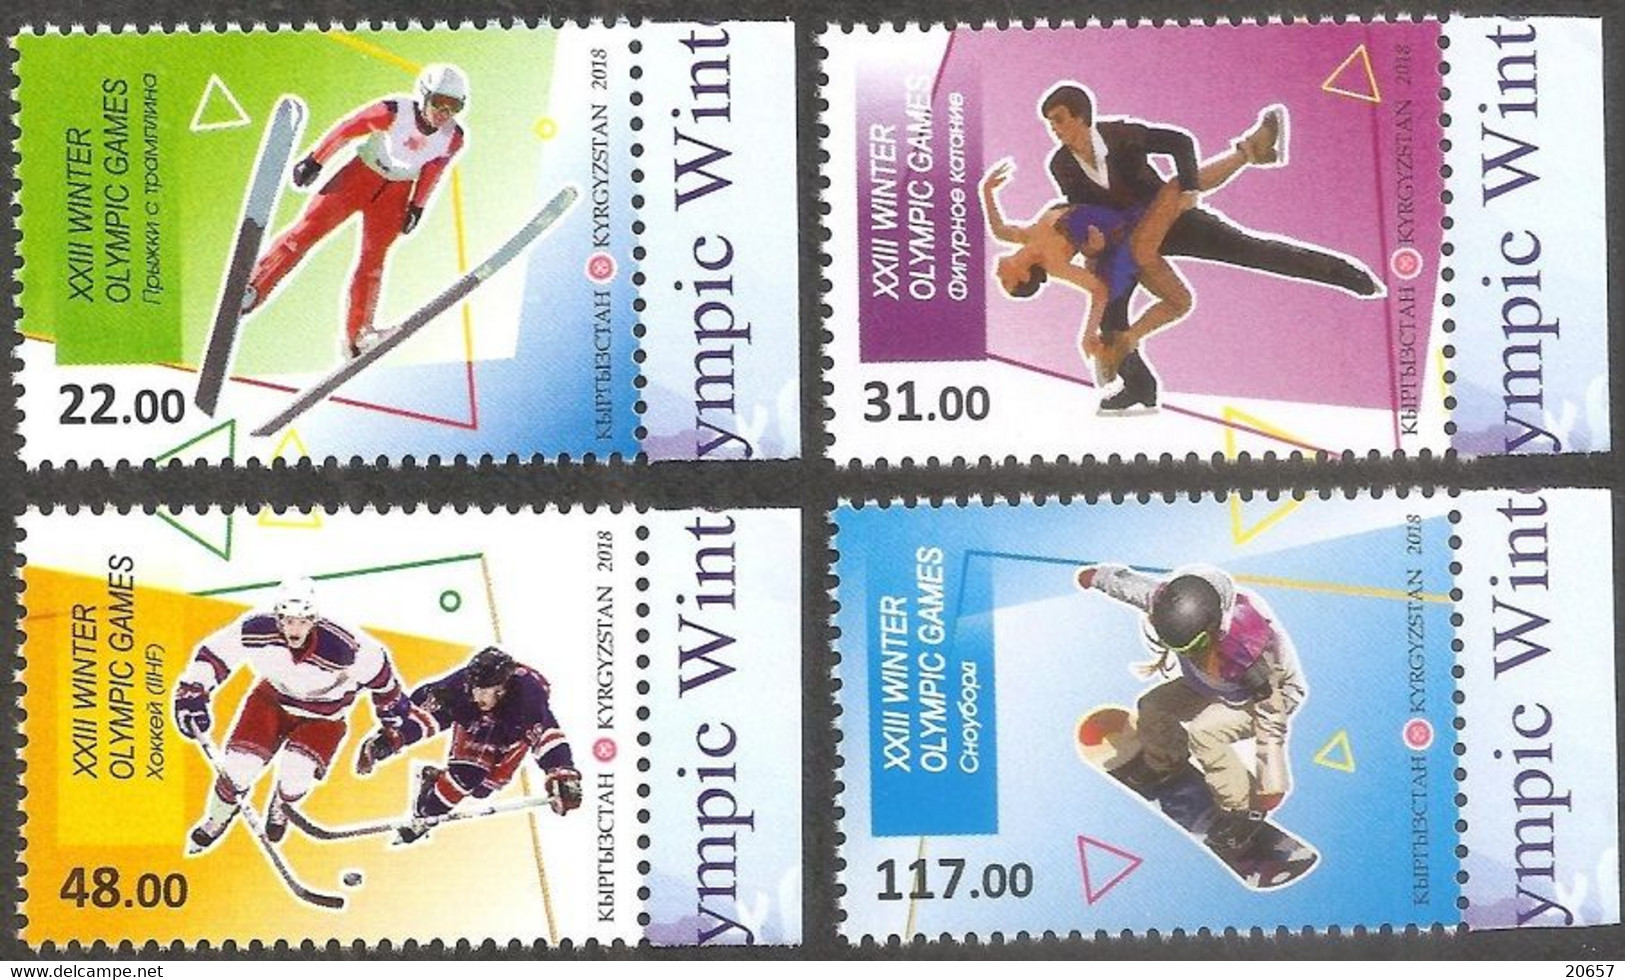 Kirghizstan Kyrgyzstan 0751/54 JO Pyeongchang Corée, Korea, Hockey, Patinage, Saut à Ski, Snowboard - Hiver 2018 : Pyeongchang